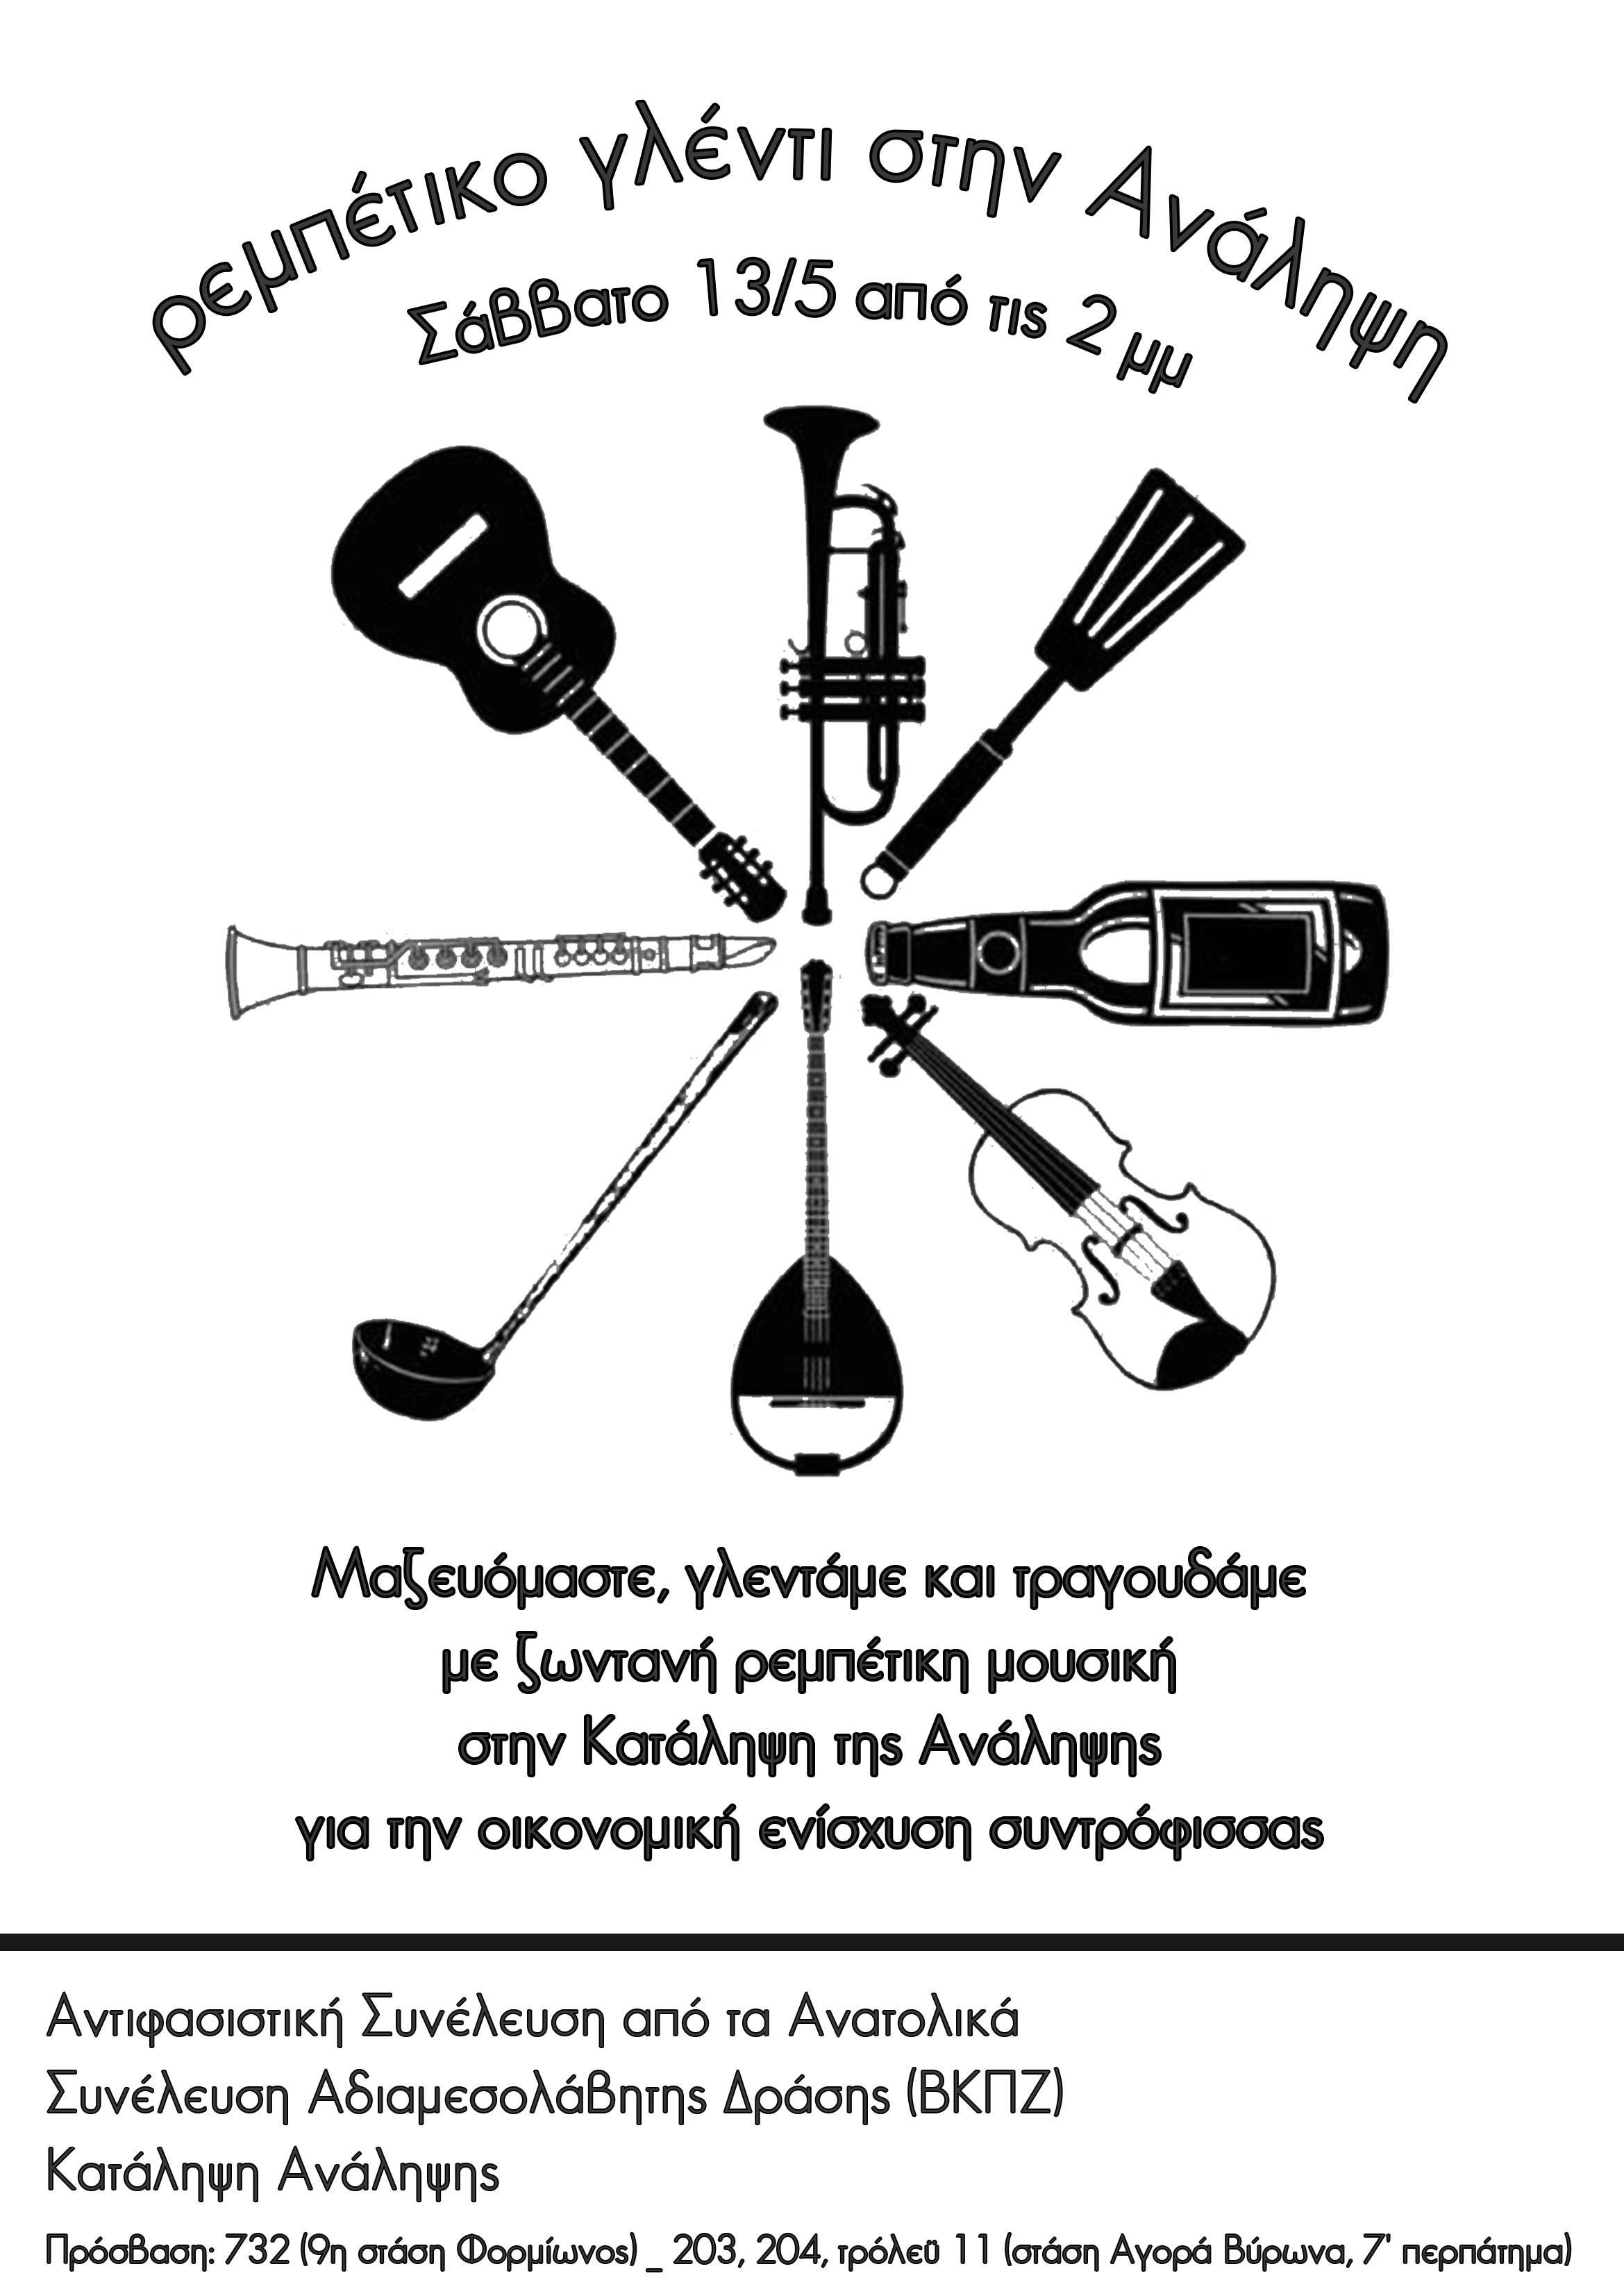 Αθήνα: Ρεμπέτικο γλέντι για την κάλυψη ιατρικών εξόδων [Σάββατο 13/05, 14:00]